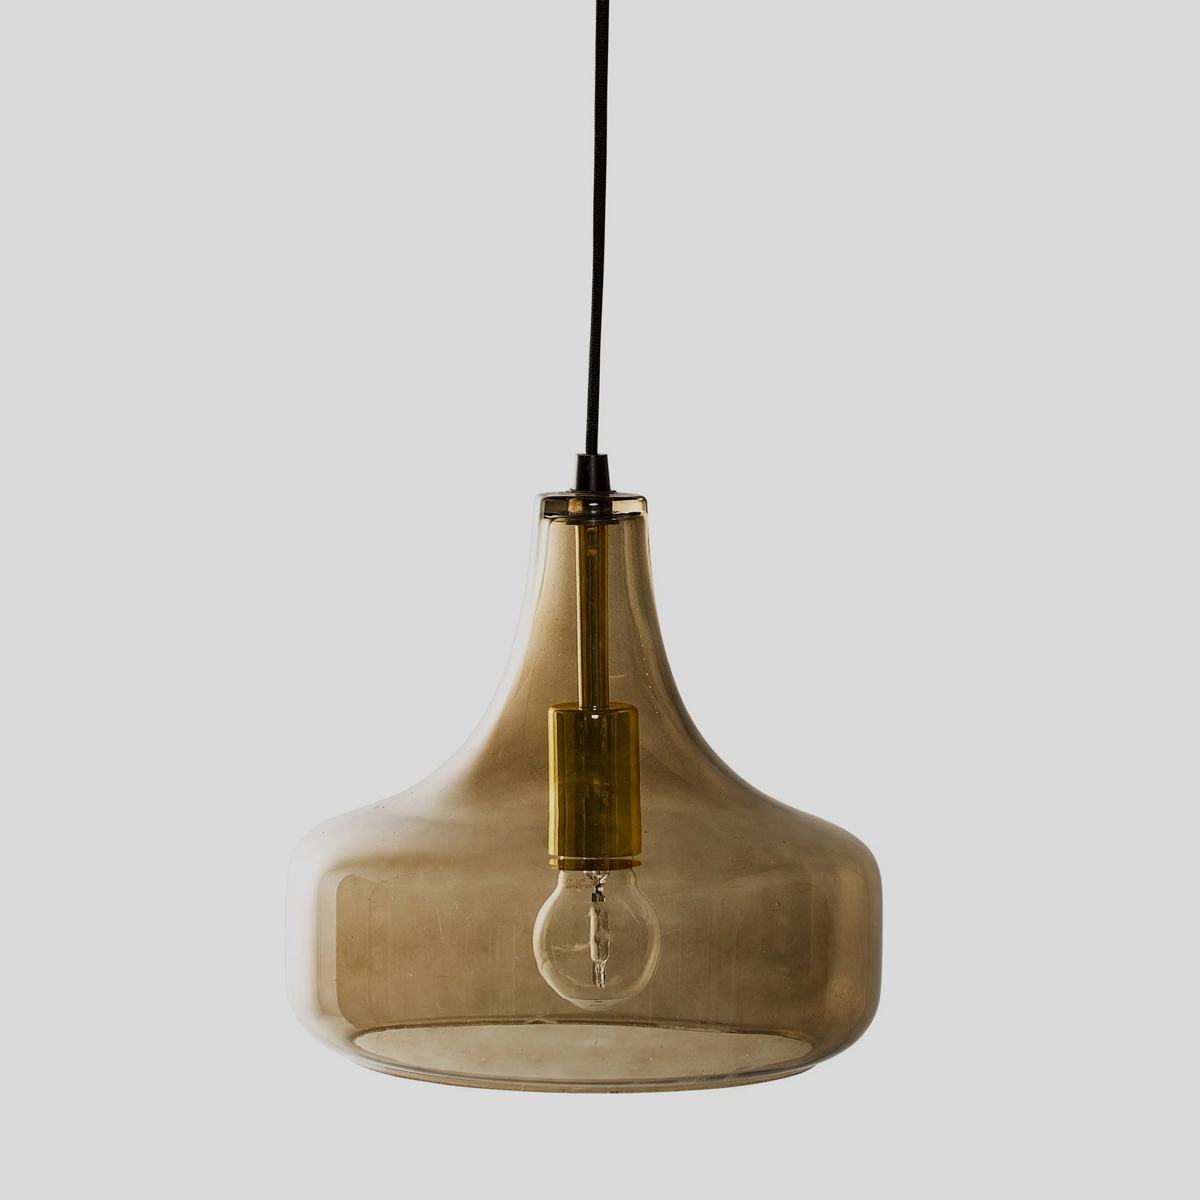 Deze hippe hanglamp verspreidt heel sfeervol en mooi het licht in de kamer. 